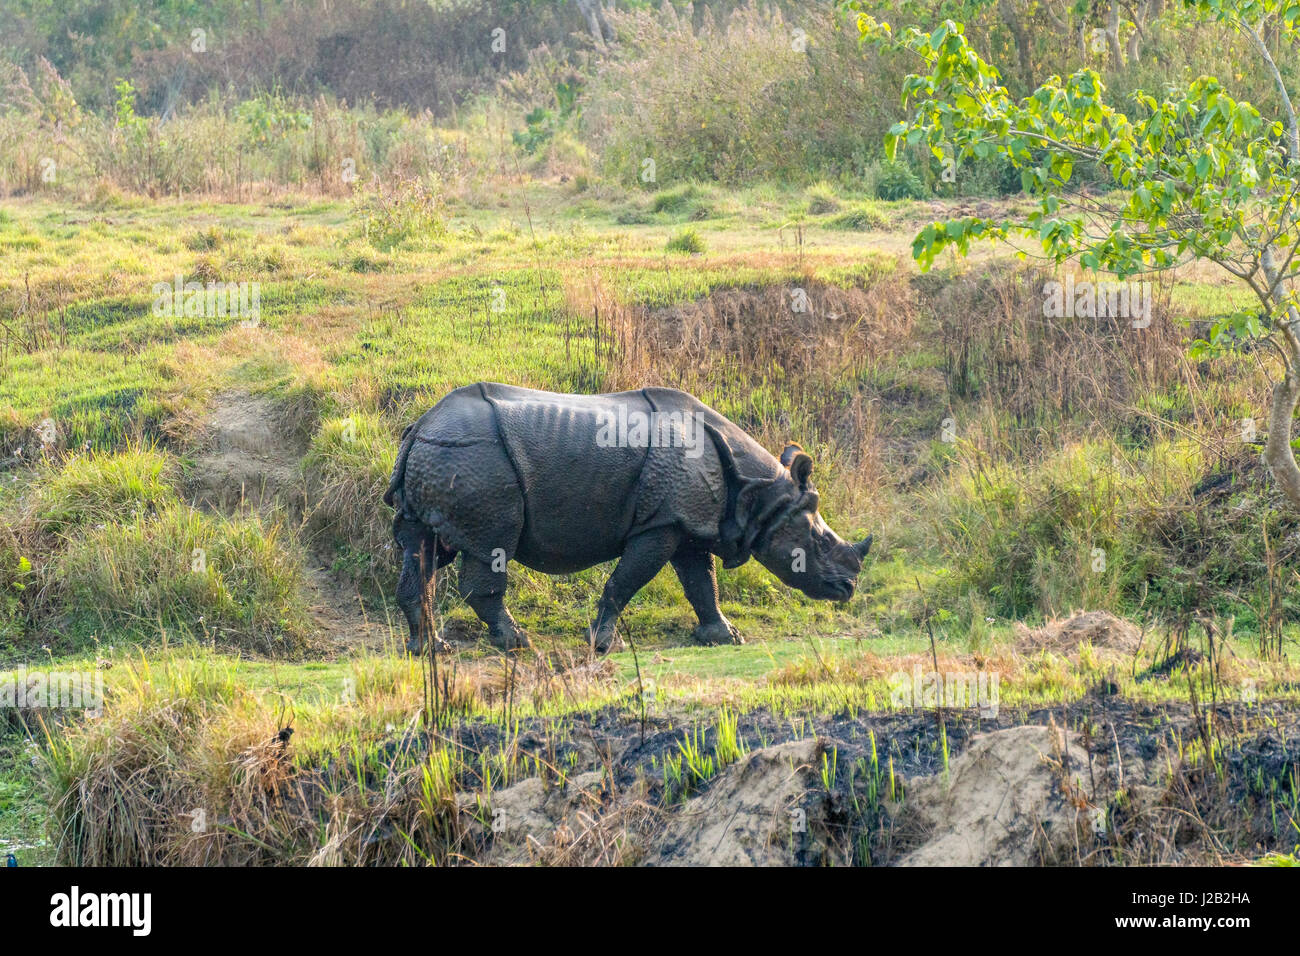 Un rhinocéros à une corne, indien (Rhinoceros unicornis) marche dans le parc national de Chitwan Banque D'Images